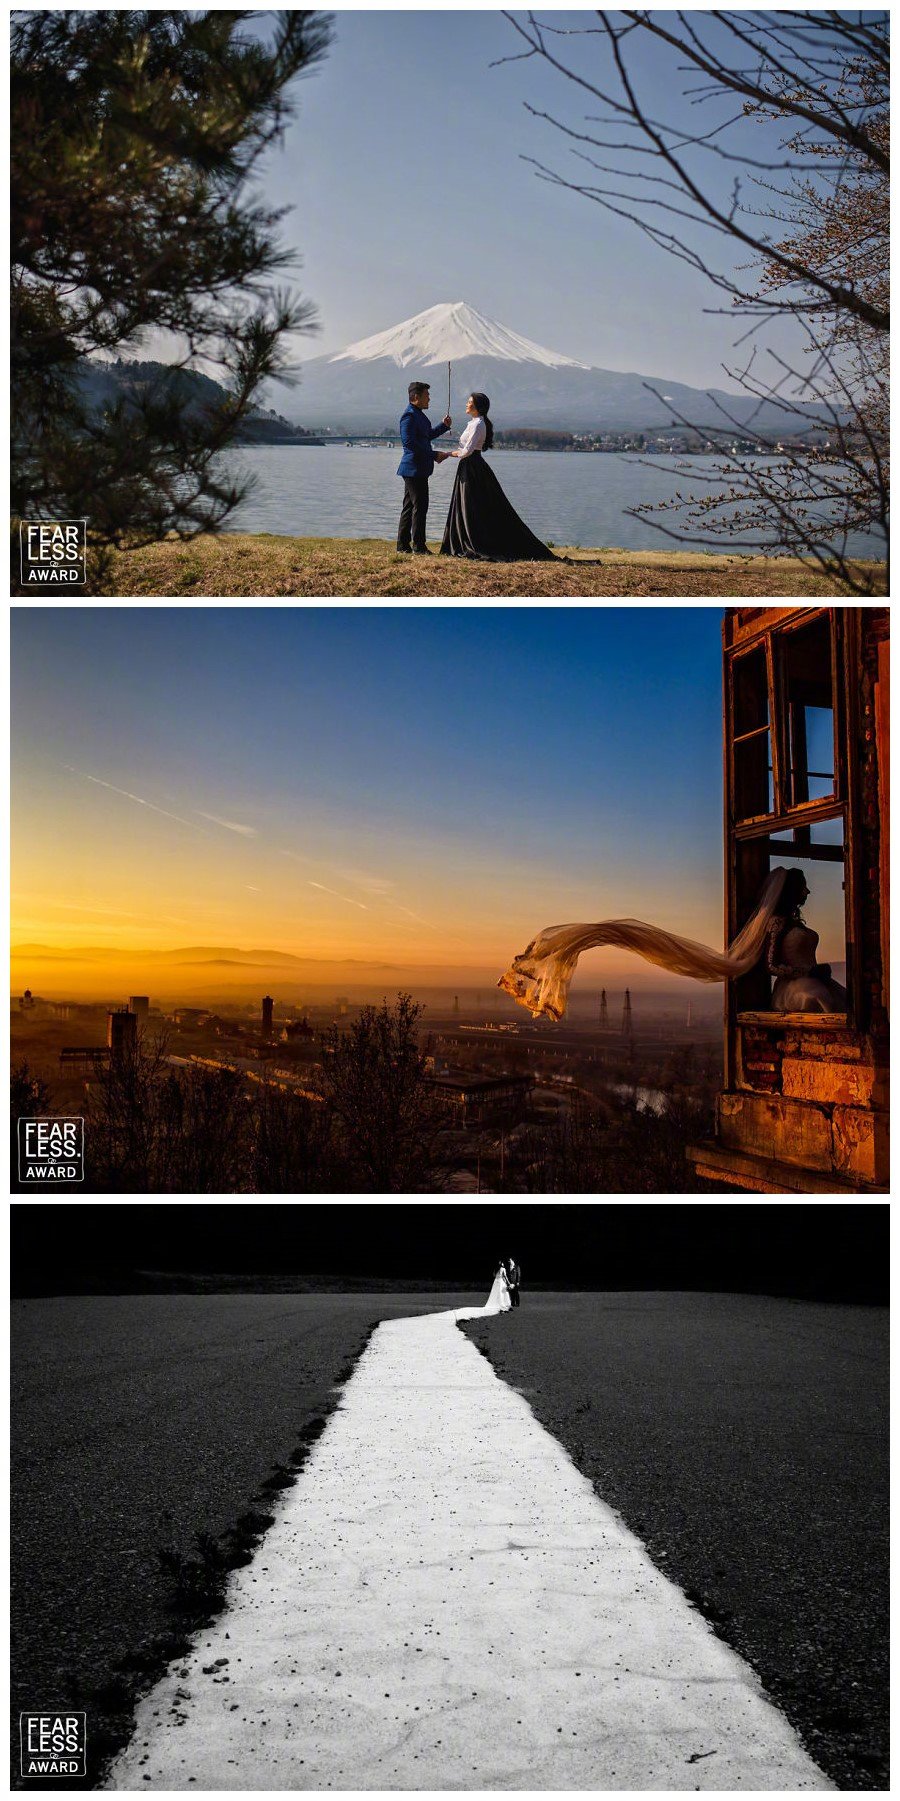 fearlessphotographers网站选出的2018年最佳婚礼照片，光影、构图、爱意、笑脸...凝结在瞬间的喜悦，让人心醉